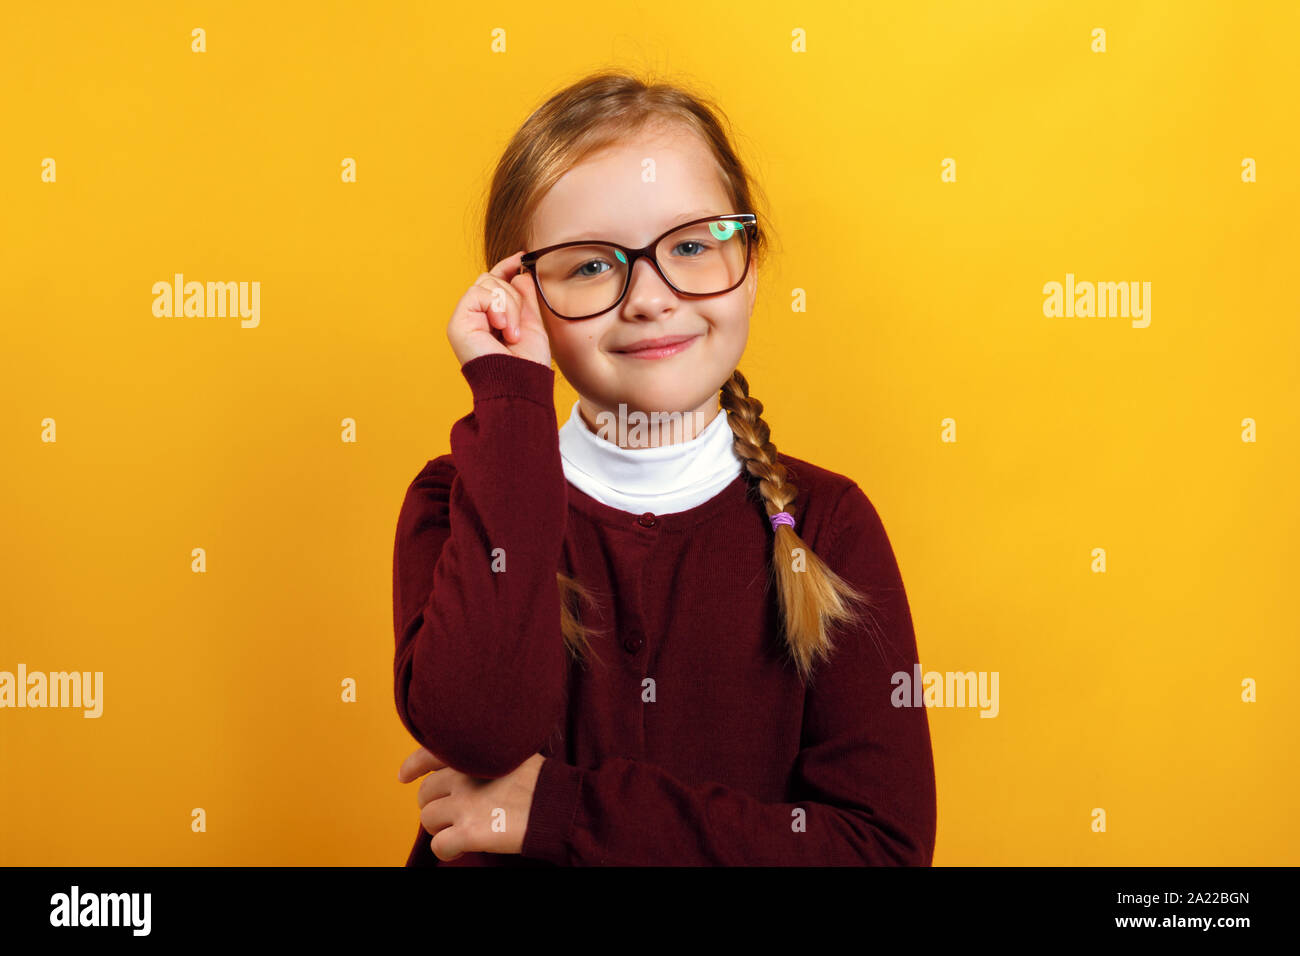 Piccolo e intelligente girl School girl corregge gli occhiali. Un bambino in un maglione rosso su sfondo giallo. Foto Stock